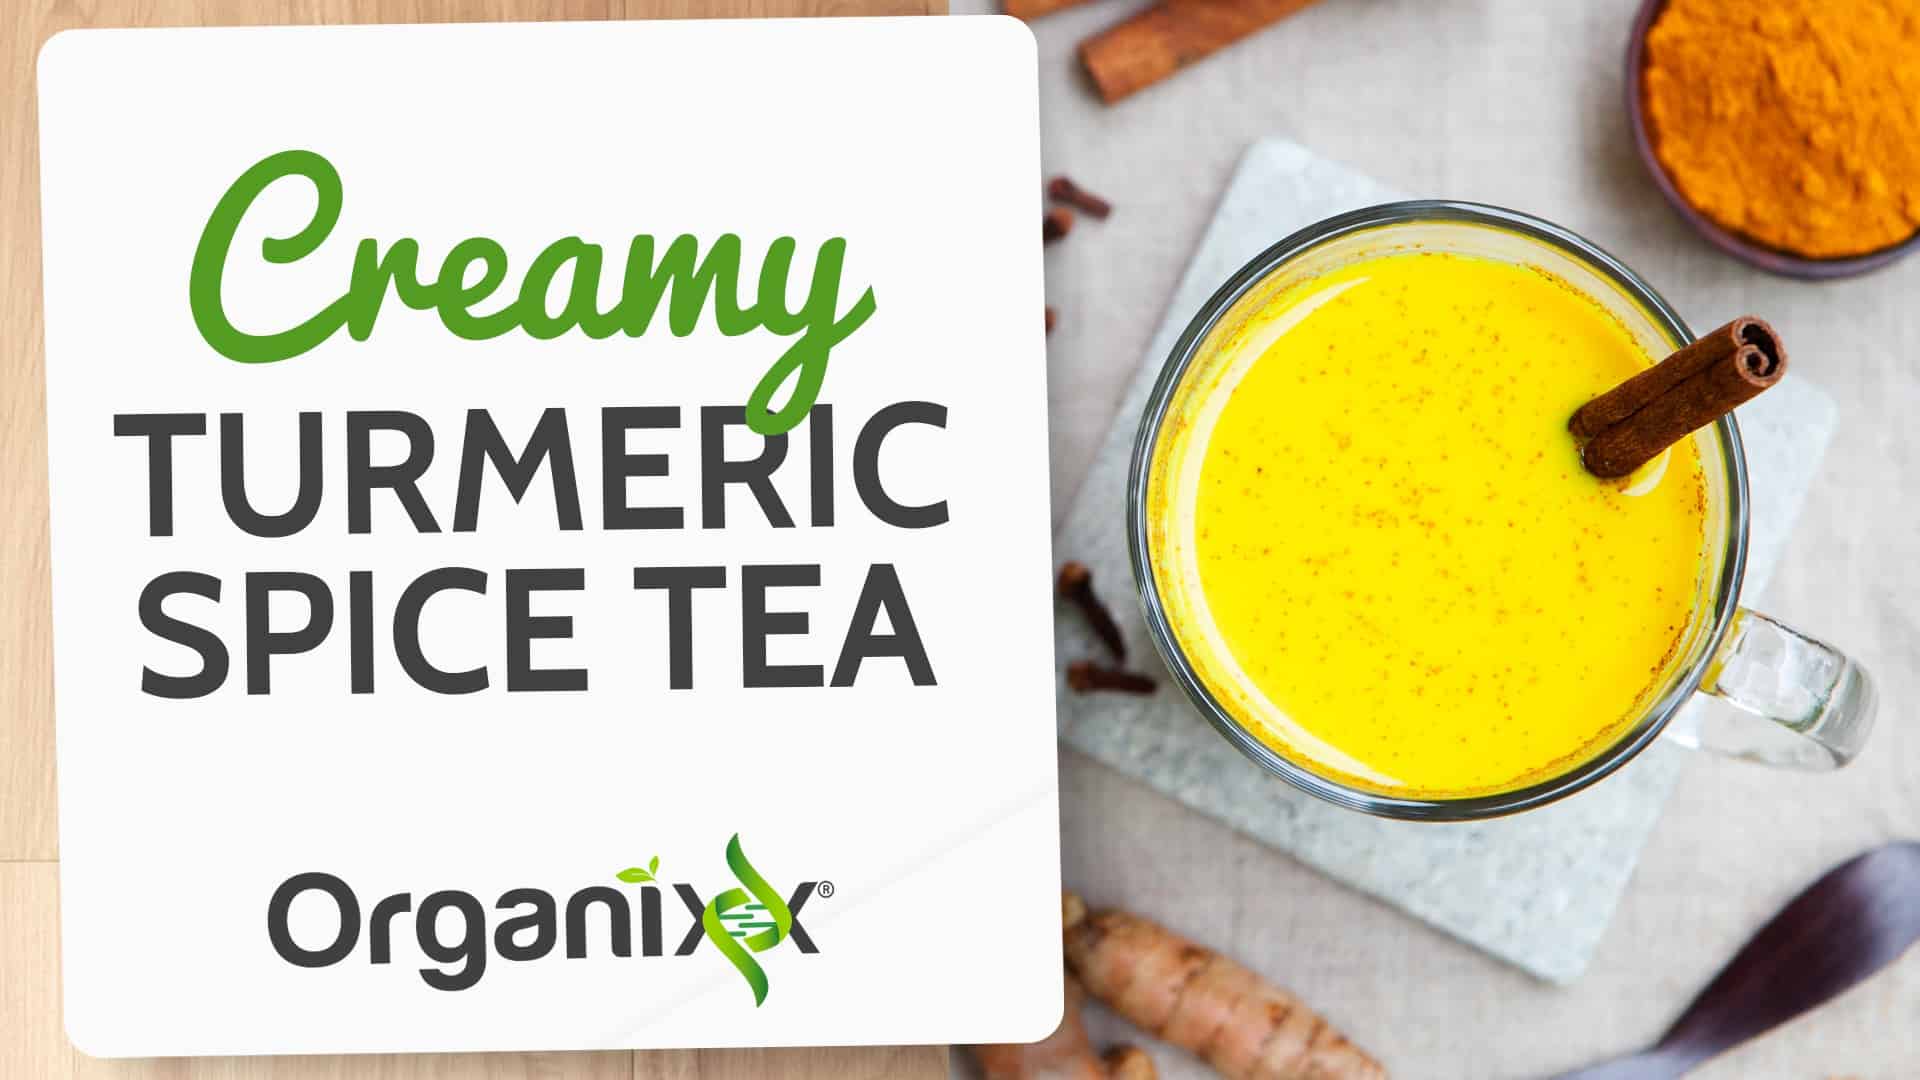 Creamy Turmeric Spice Tea